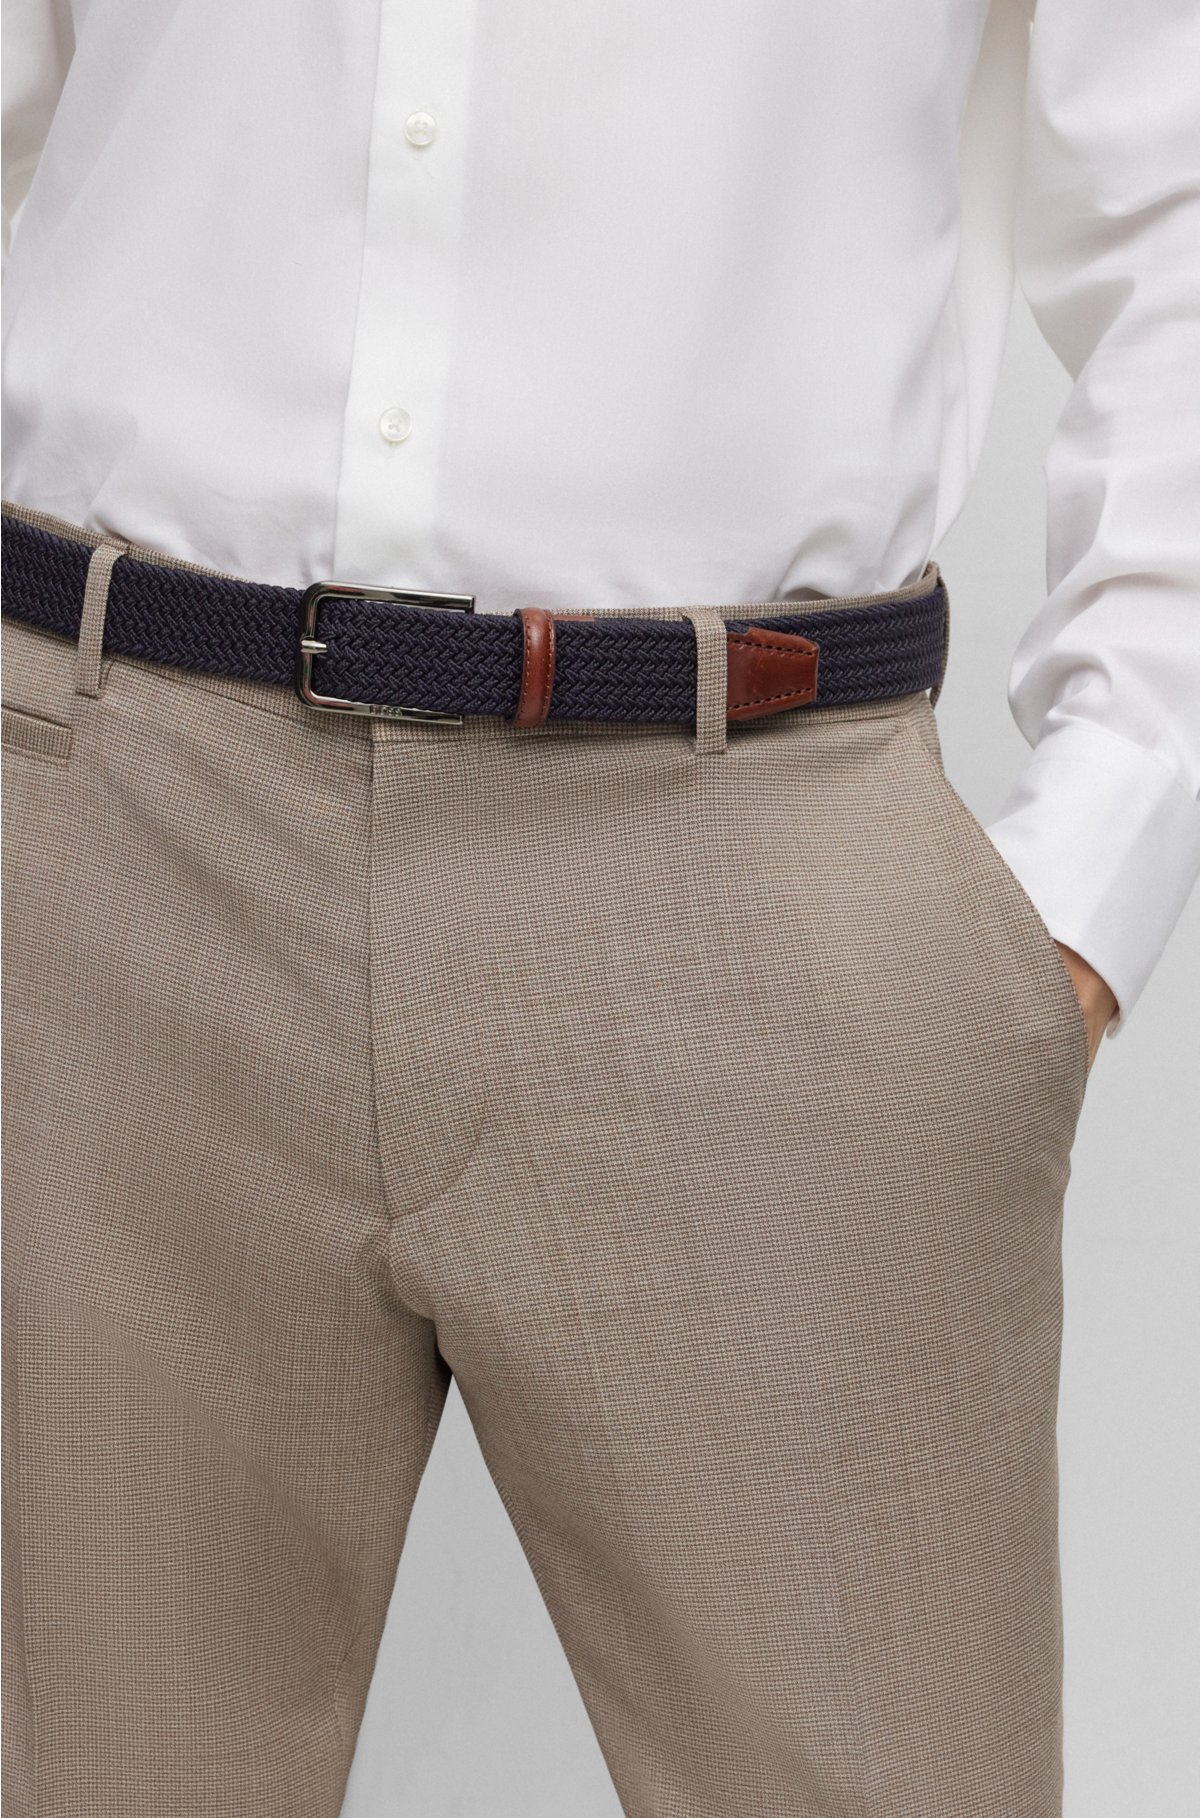 Men's Belts: Leather & Woven Belts